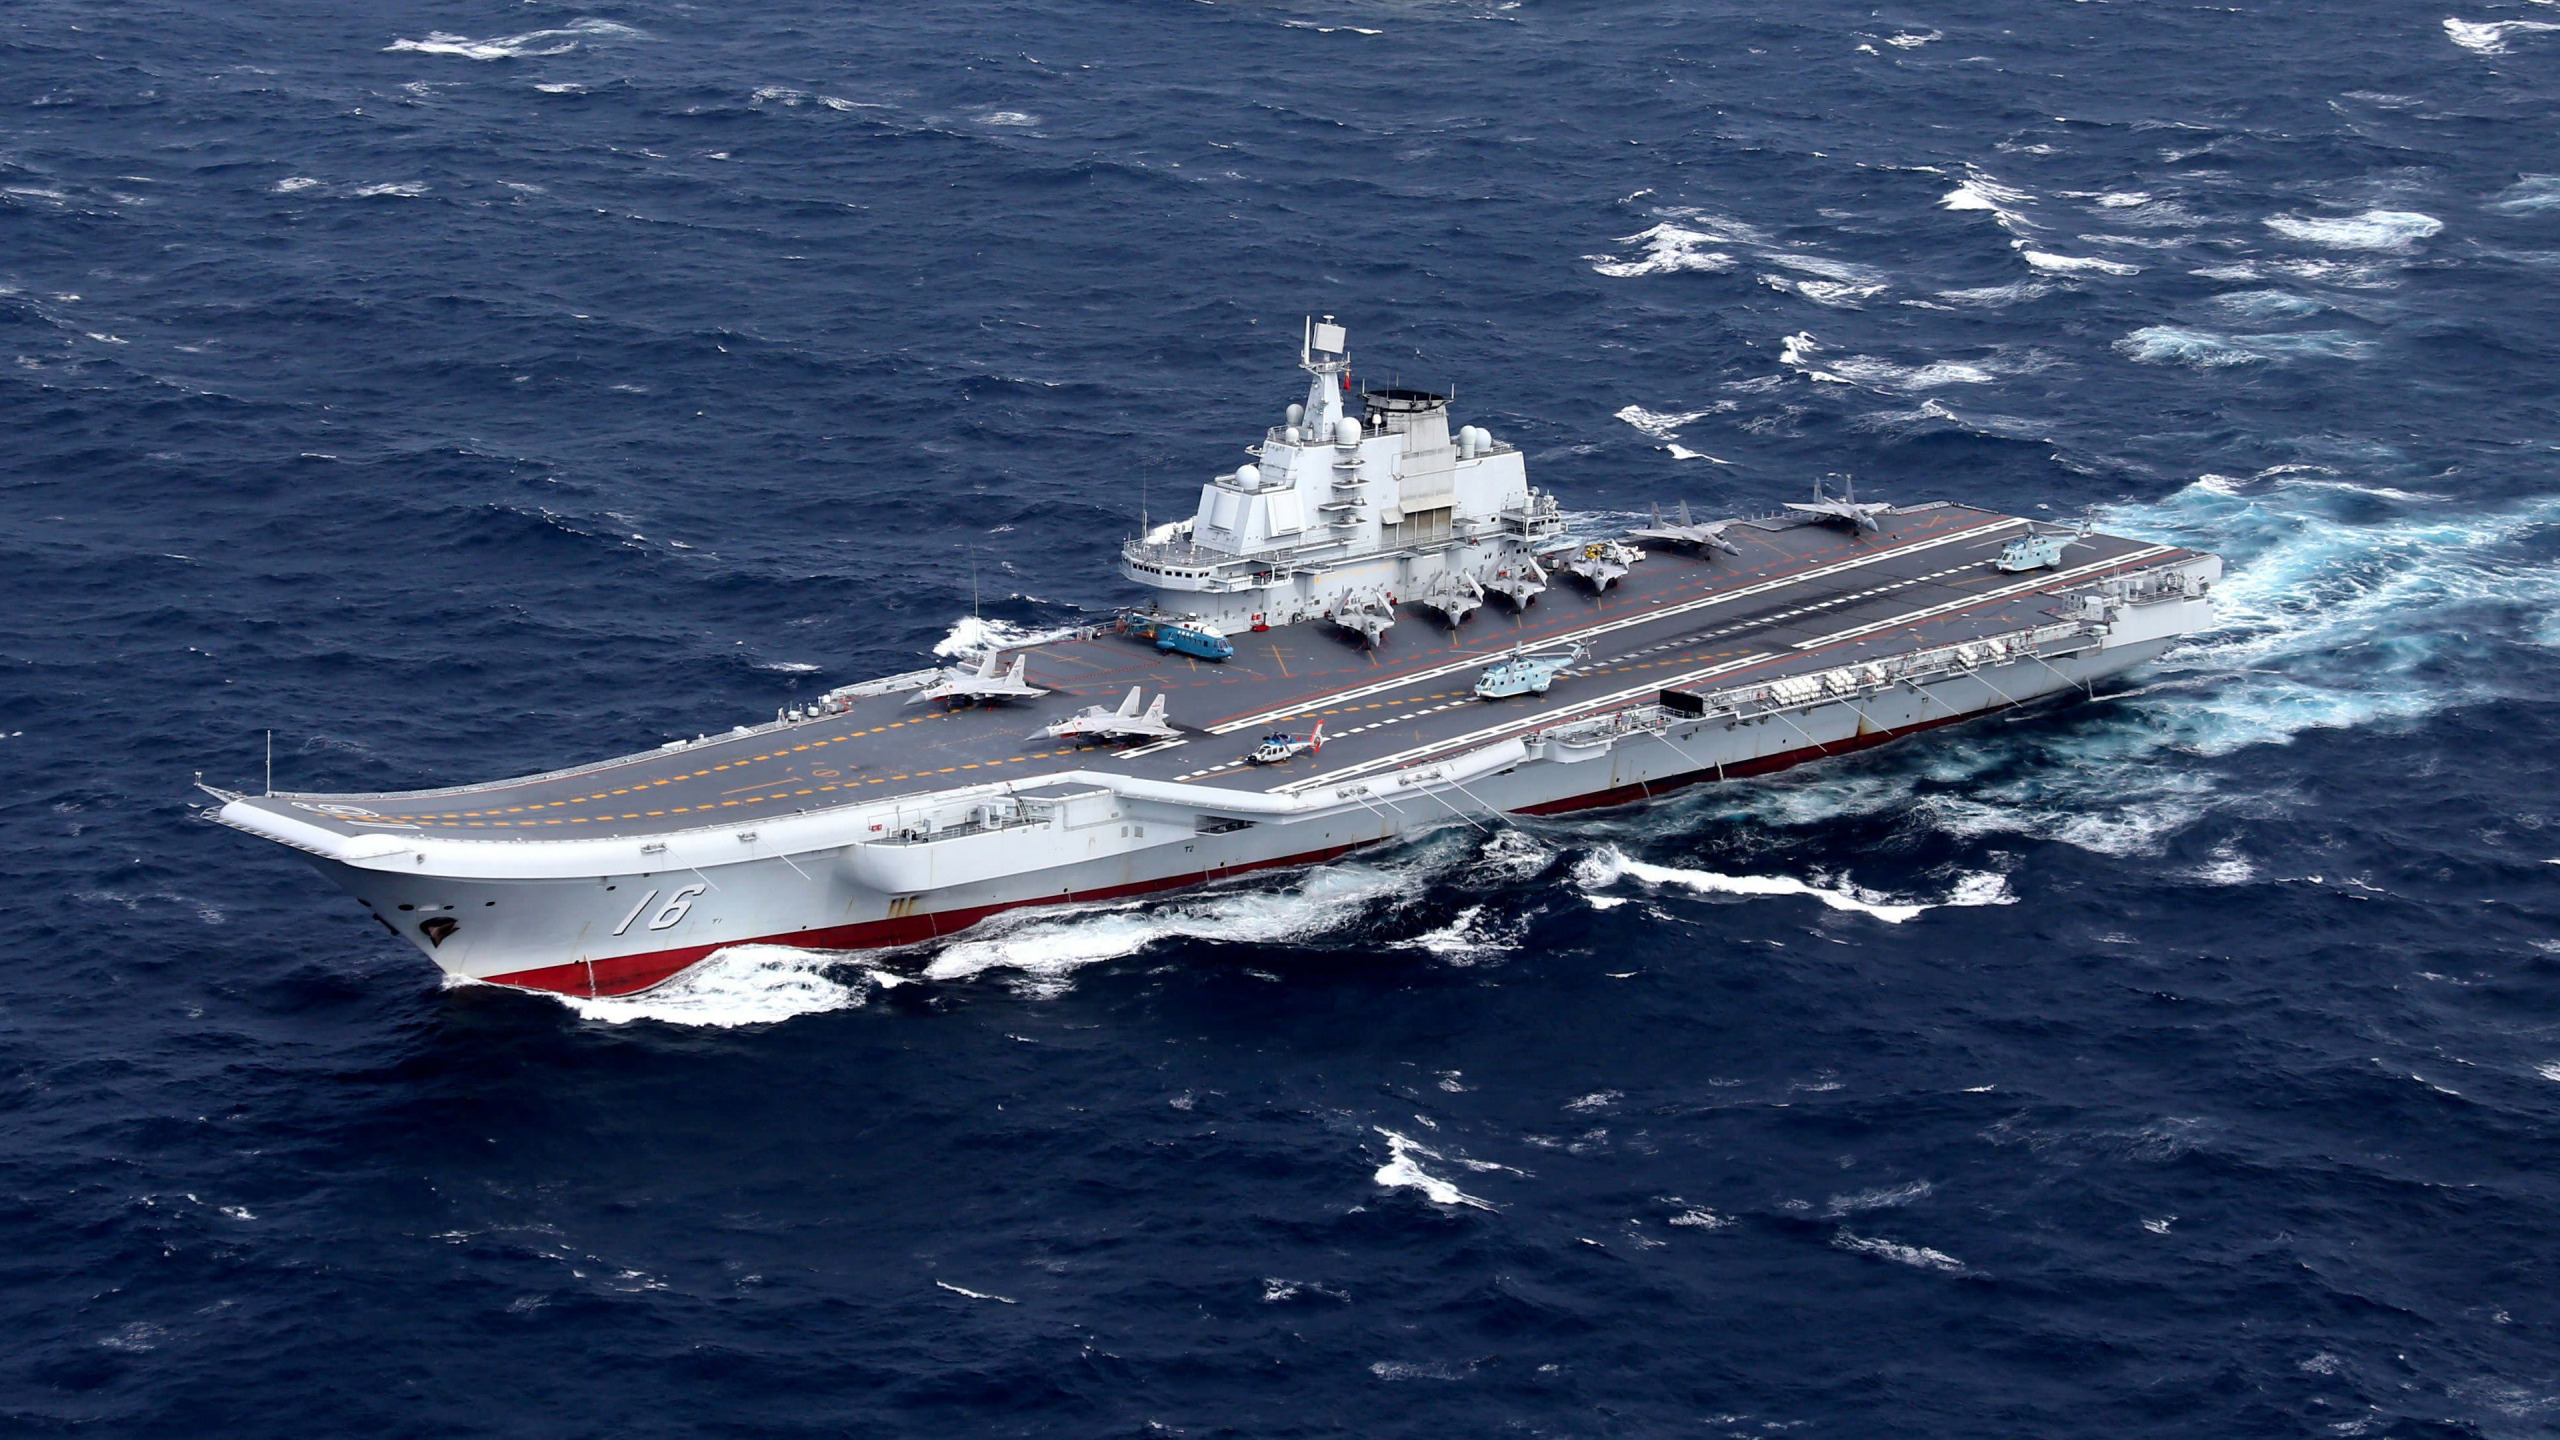 Депутат из ЛДПР предложил выкупить у Китая советский авианосец и назвать его в честь Жириновского